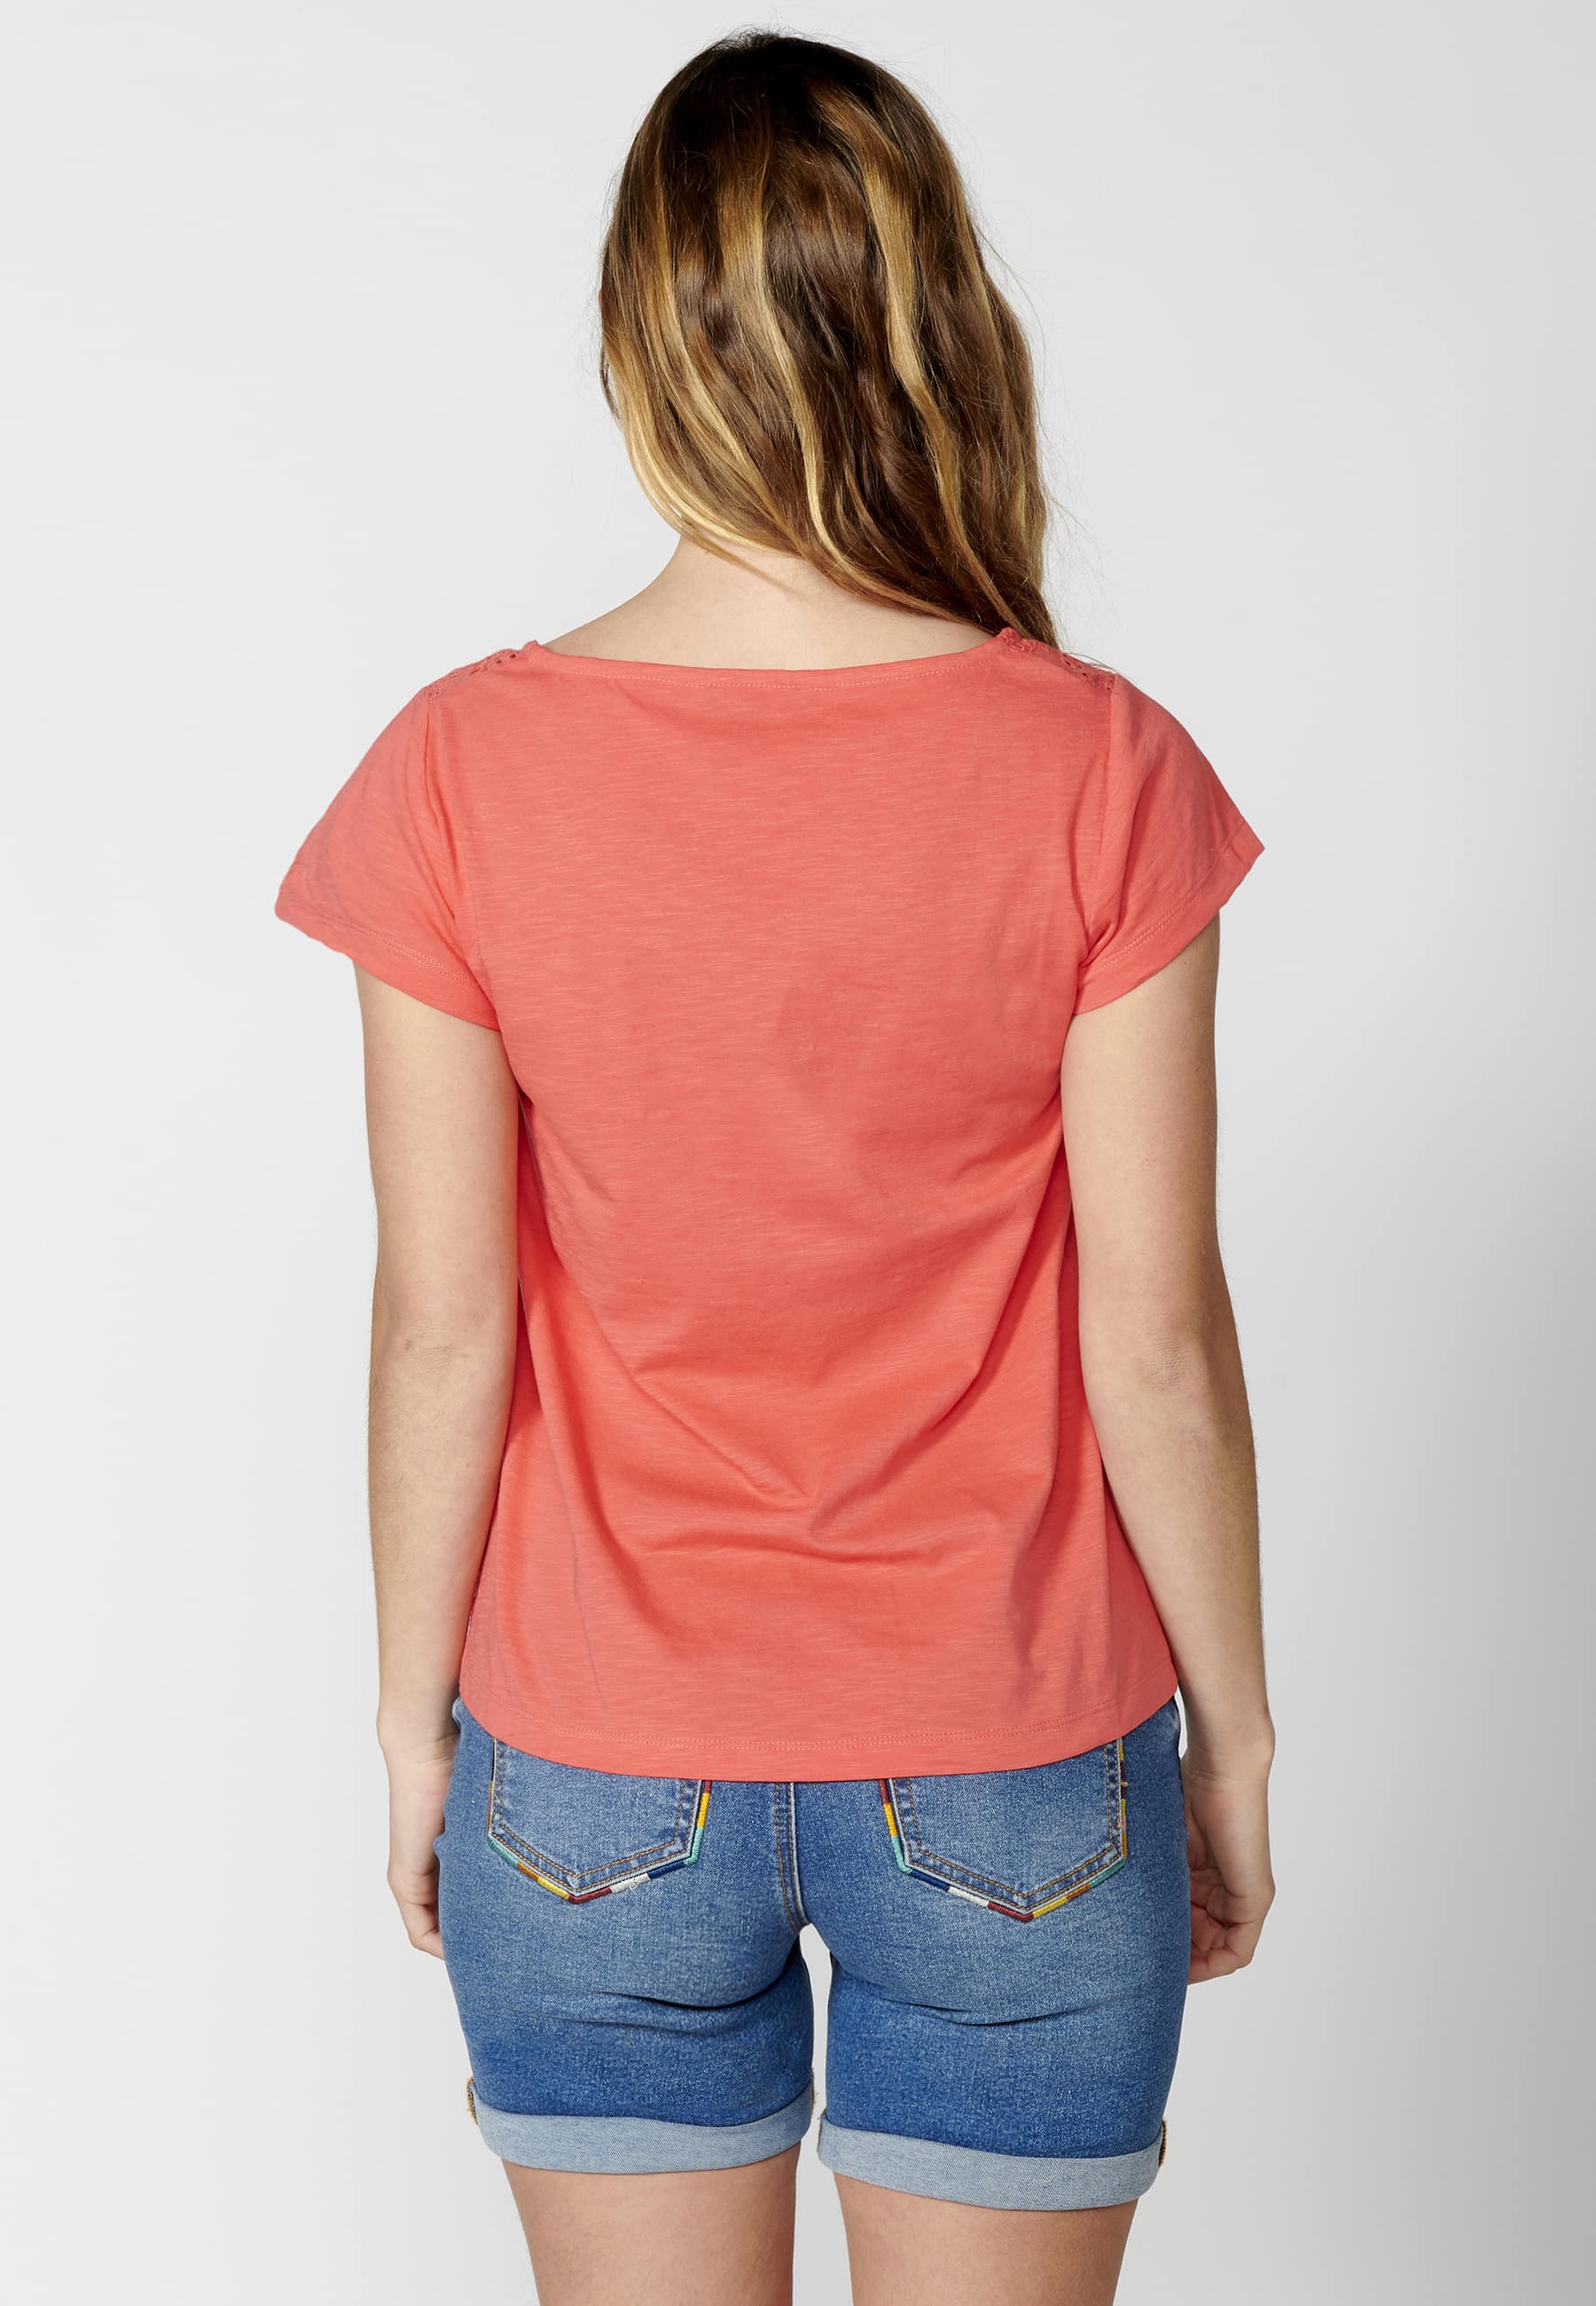 Camiseta top manga corta de Algodón con escote corazón color Coral para Mujer